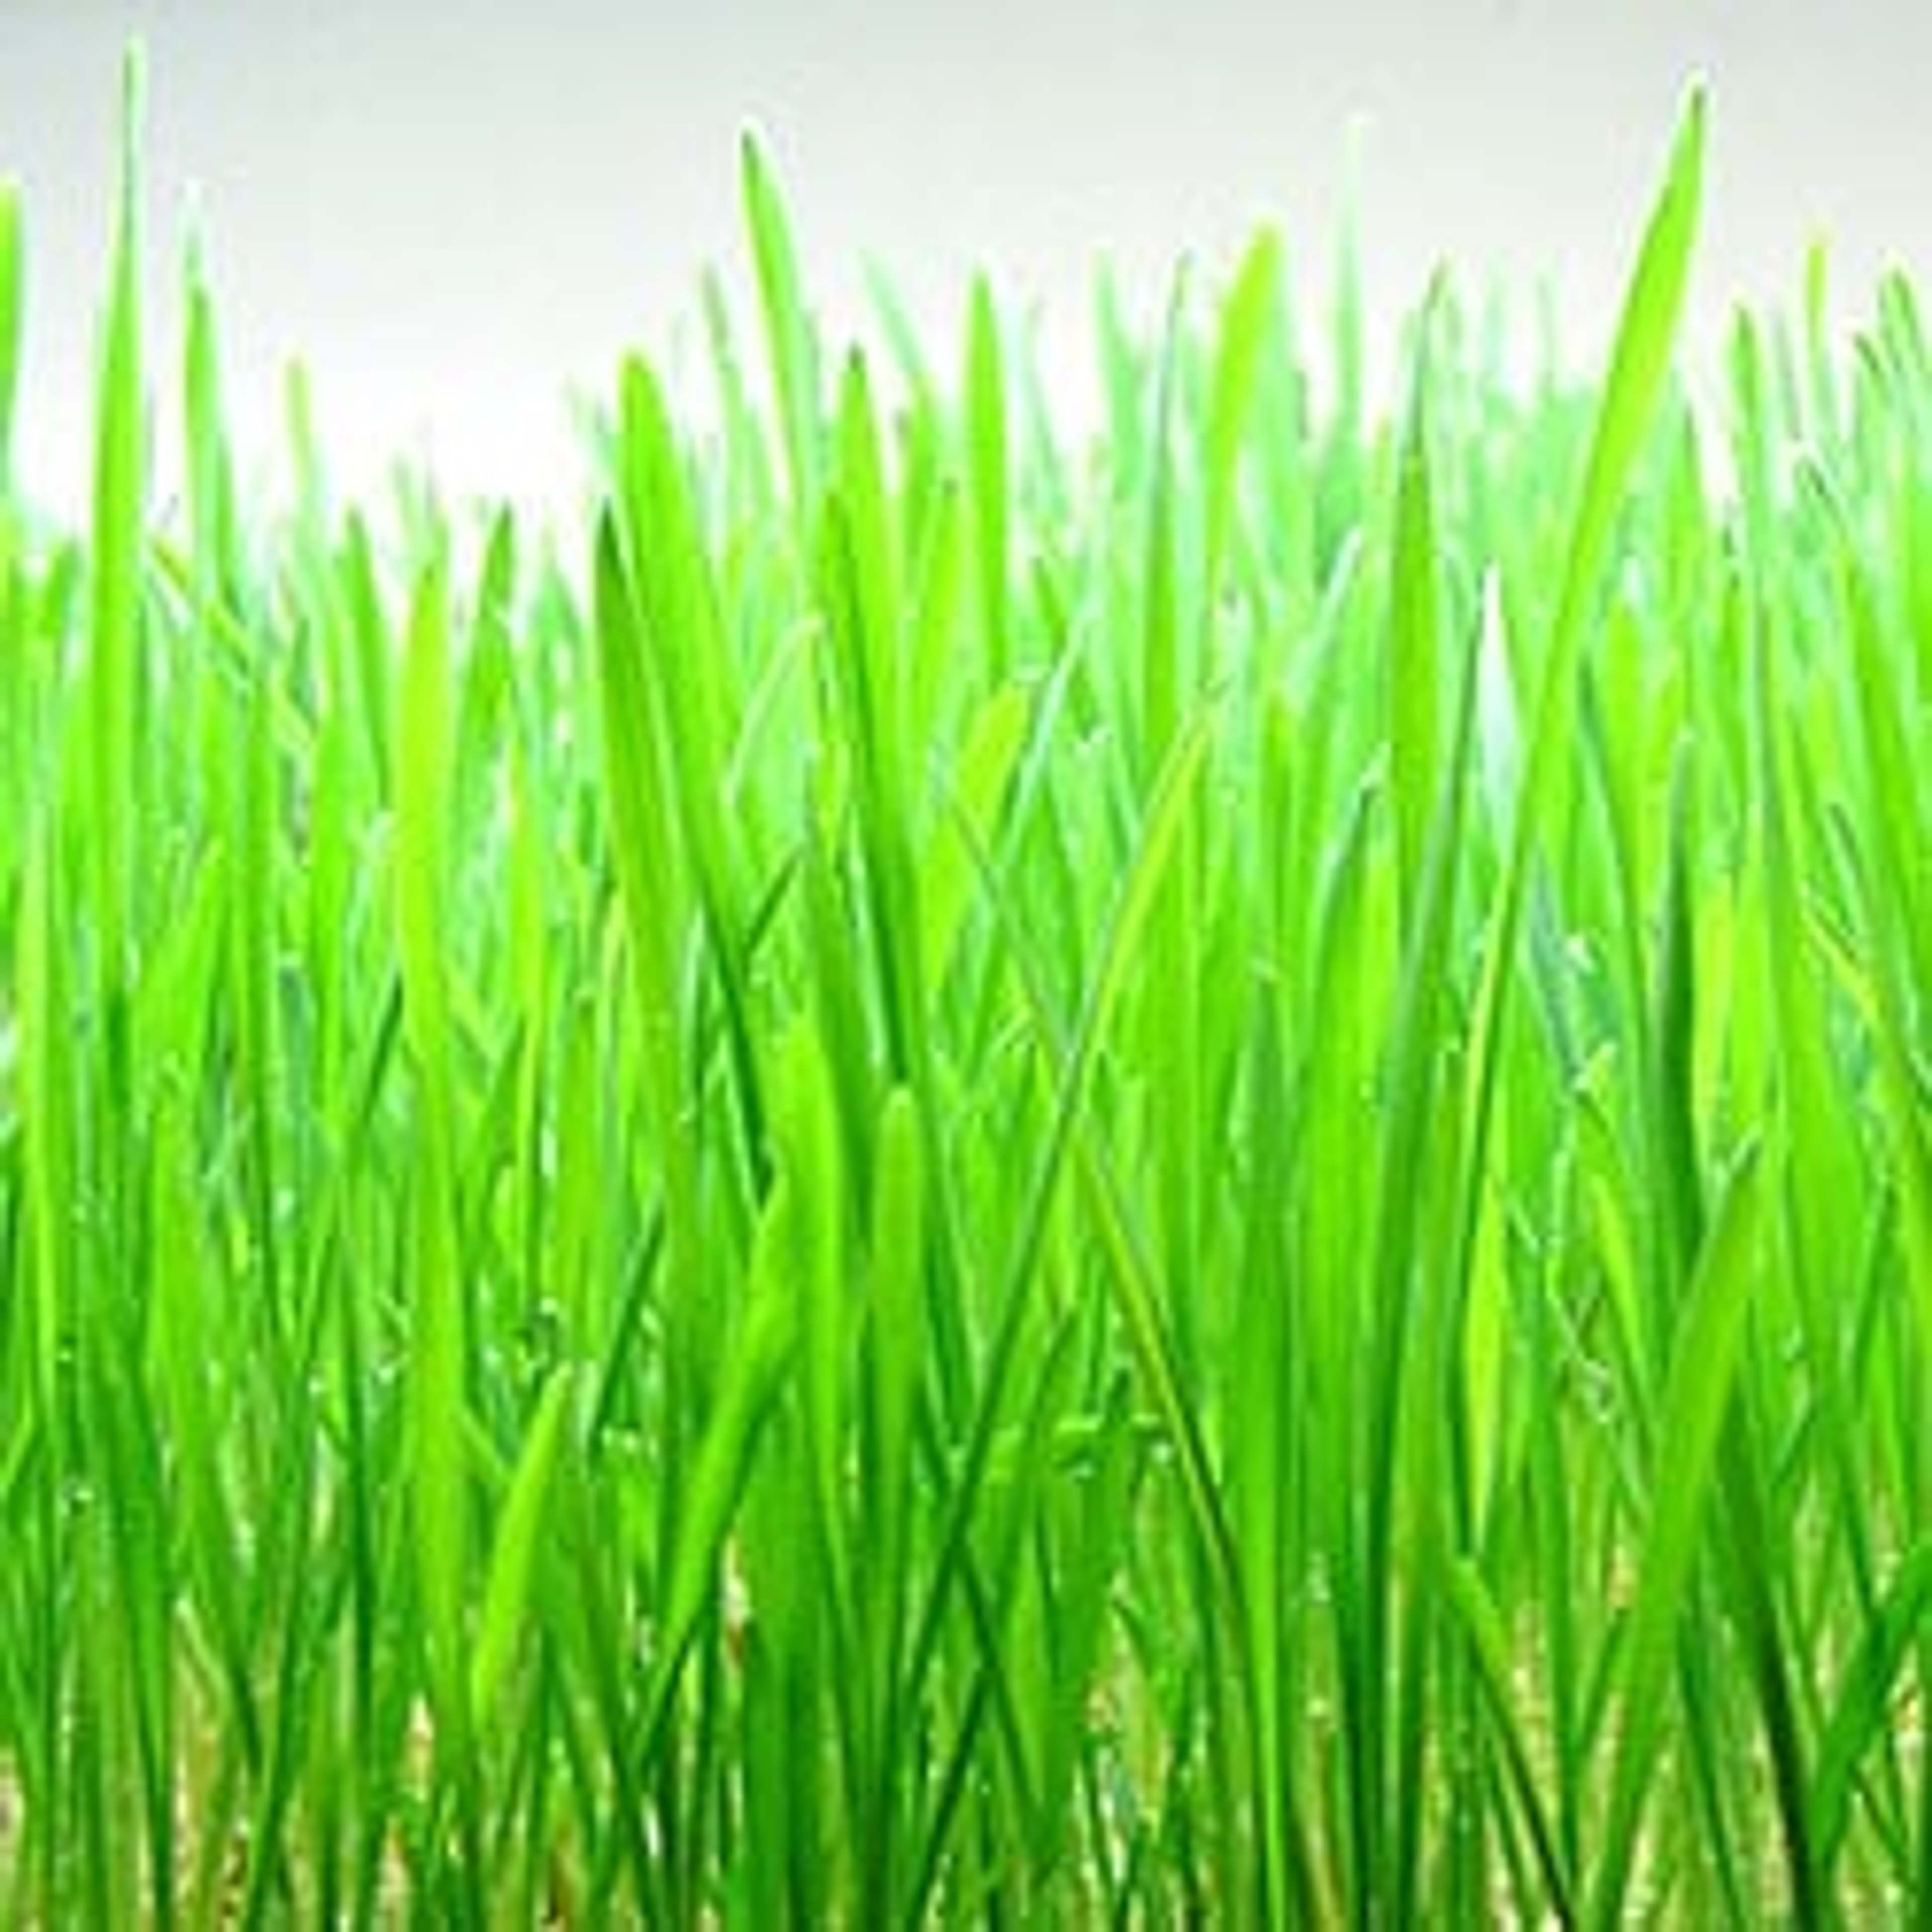 L'herbe de blé est une excellente source d'acides aminés, de chlorophylle, de vitamines et de minéraux et peut contribuer à améliorer votre santé.